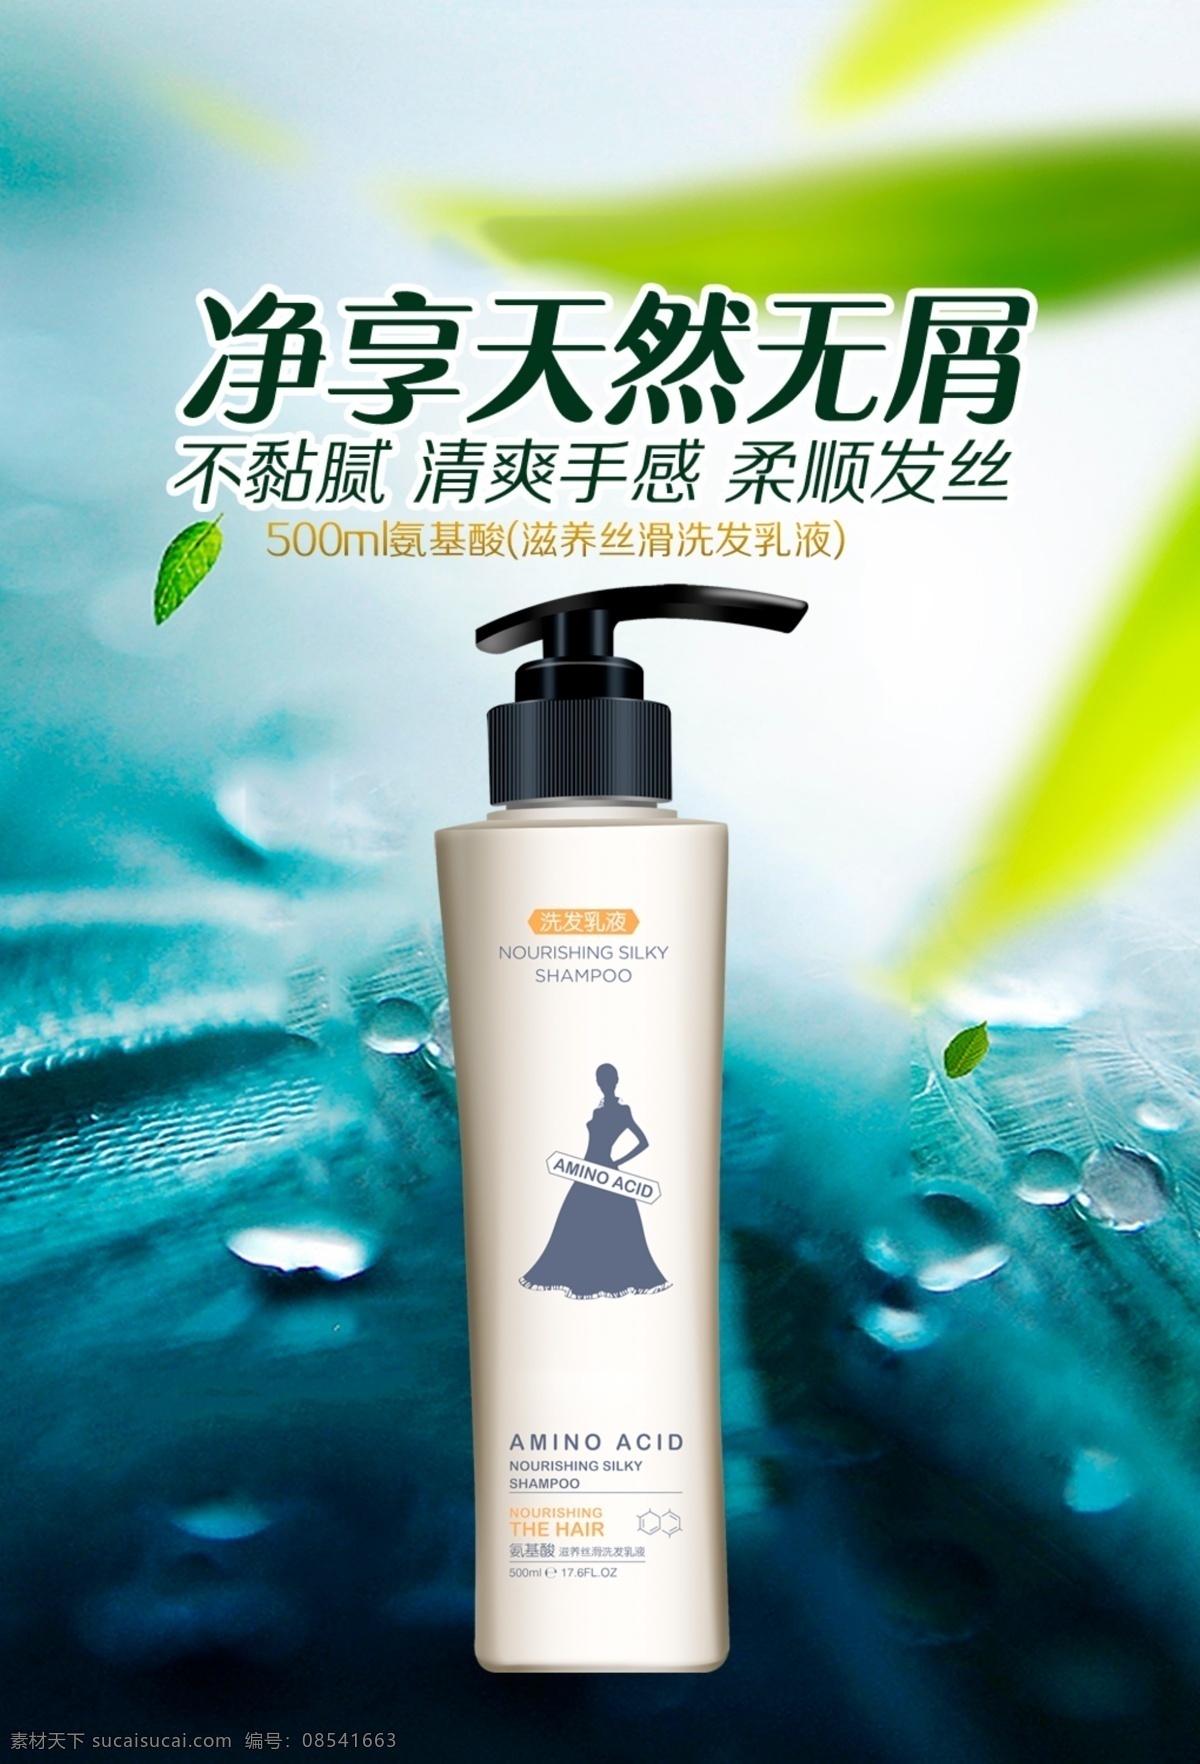 氨基酸 滋养 丝 滑 洗发 乳液 氨基酸素材 洗发乳广告 化妆品广告 洗发乳素材 氨基酸广告